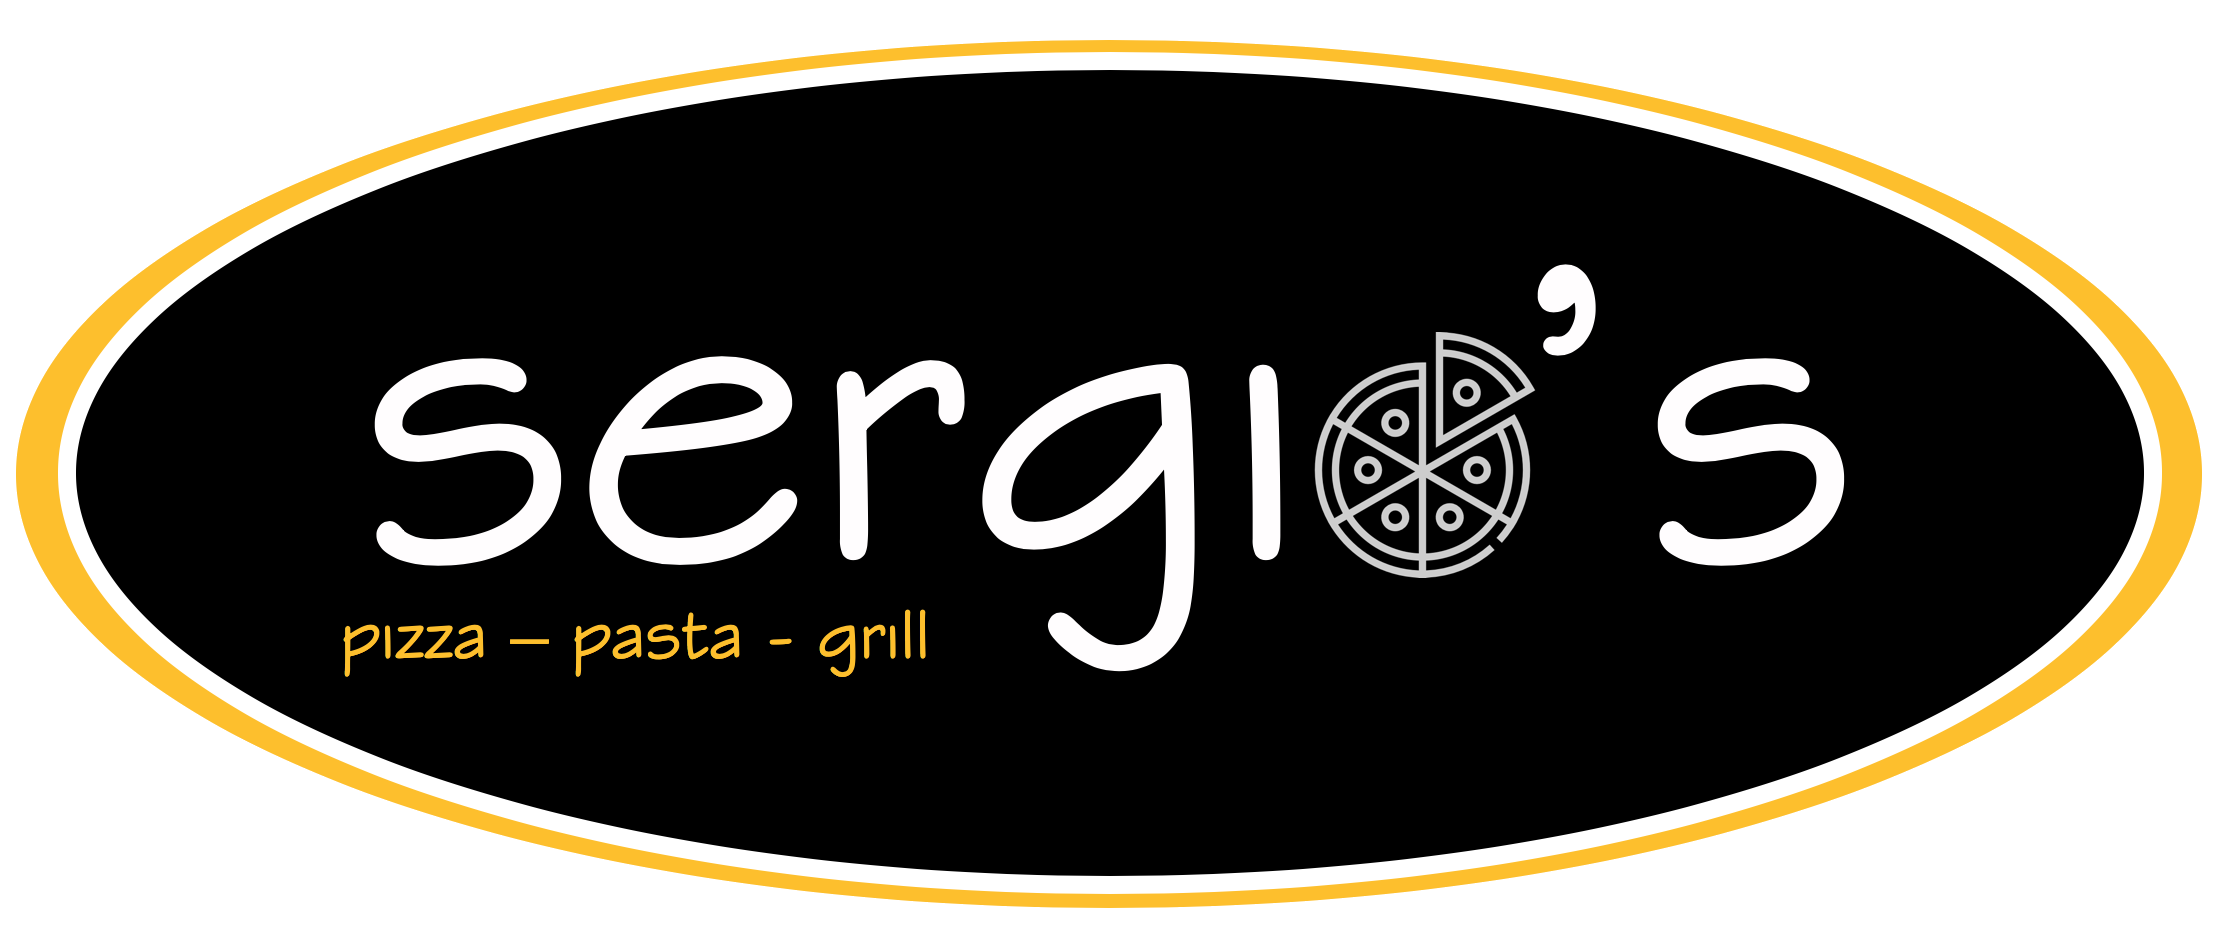 sergios_augsburg_pizza_pasta_Logo_trans